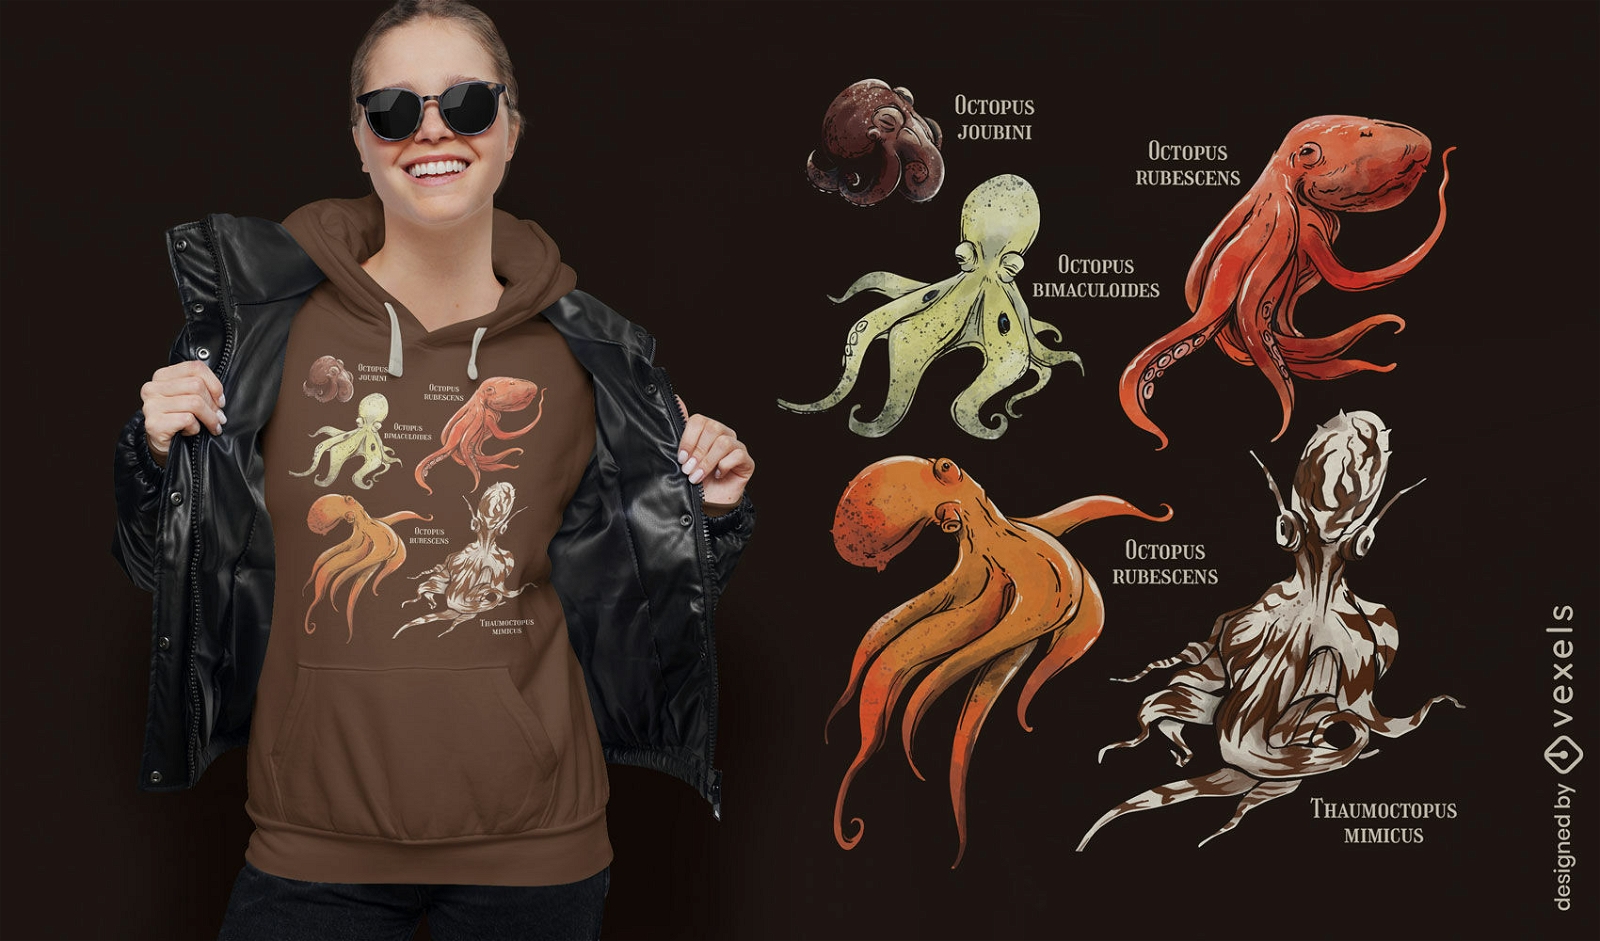 Dise?o de camiseta de especies de animales marinos de pulpo.